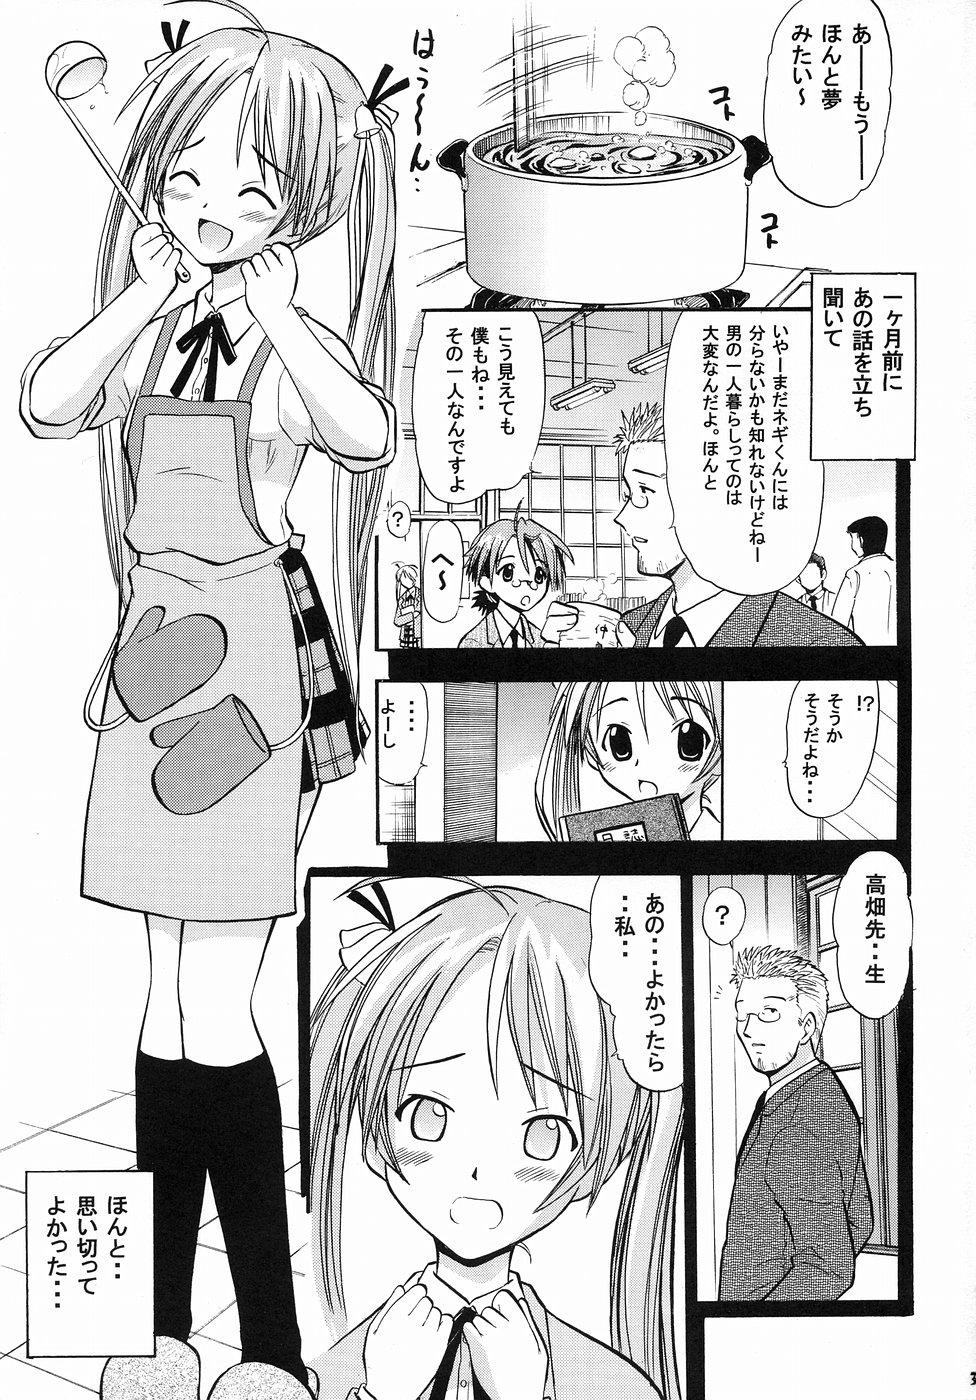 Pauzudo Asuna no Koi Suru Heart - Mahou sensei negima Free Hard Core Porn - Page 2